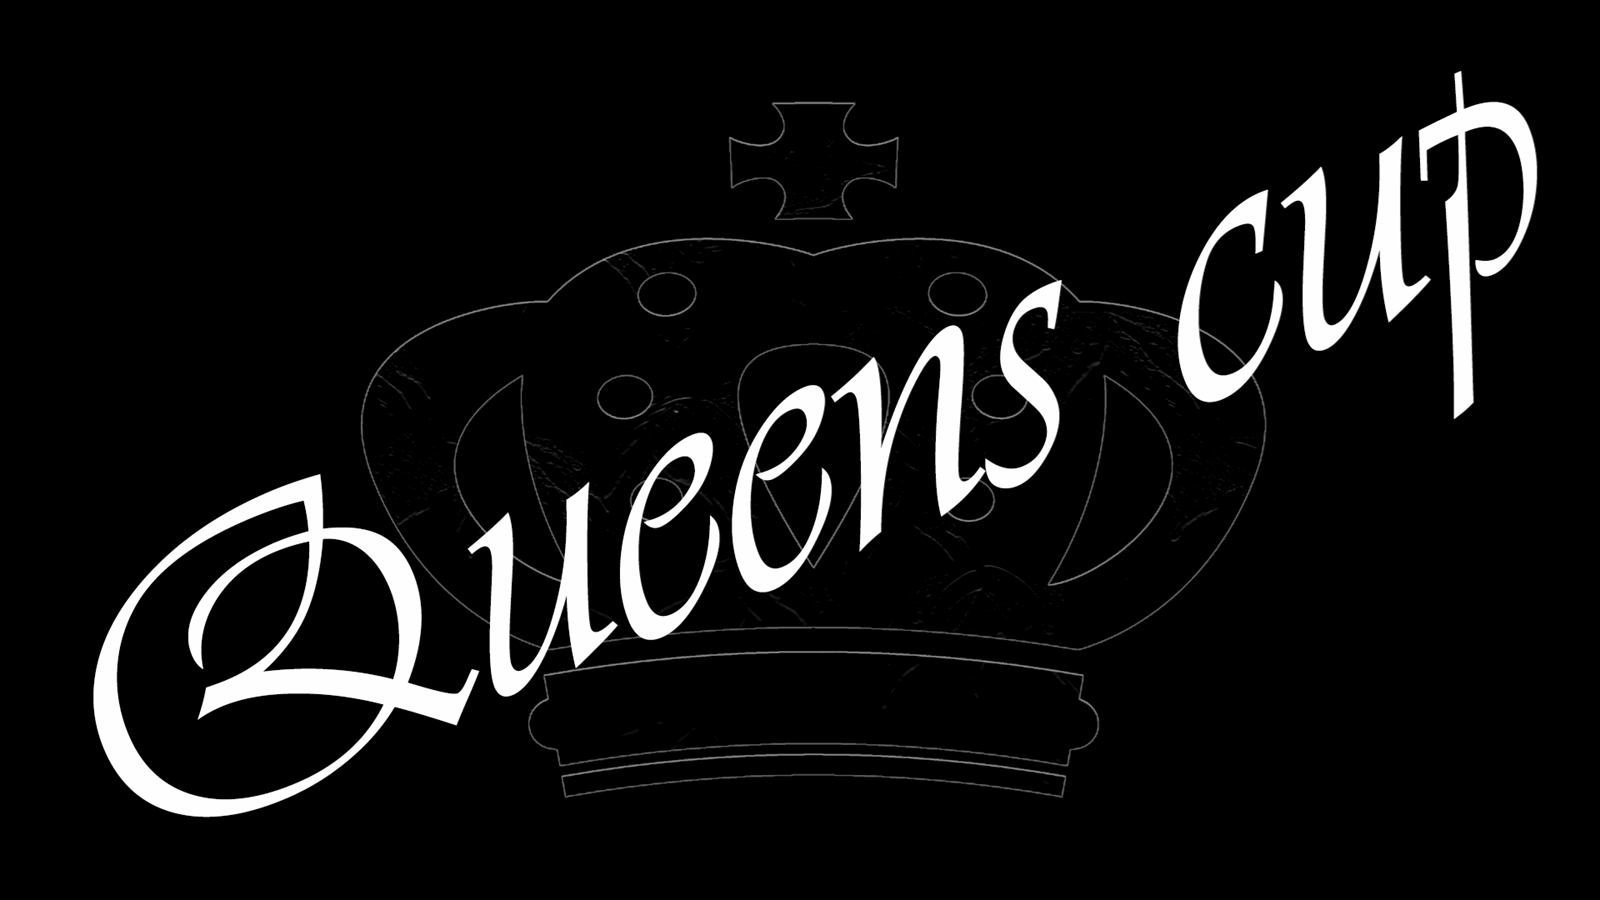 Queens Cup efterår 2021 - 3 nye datoer på plads